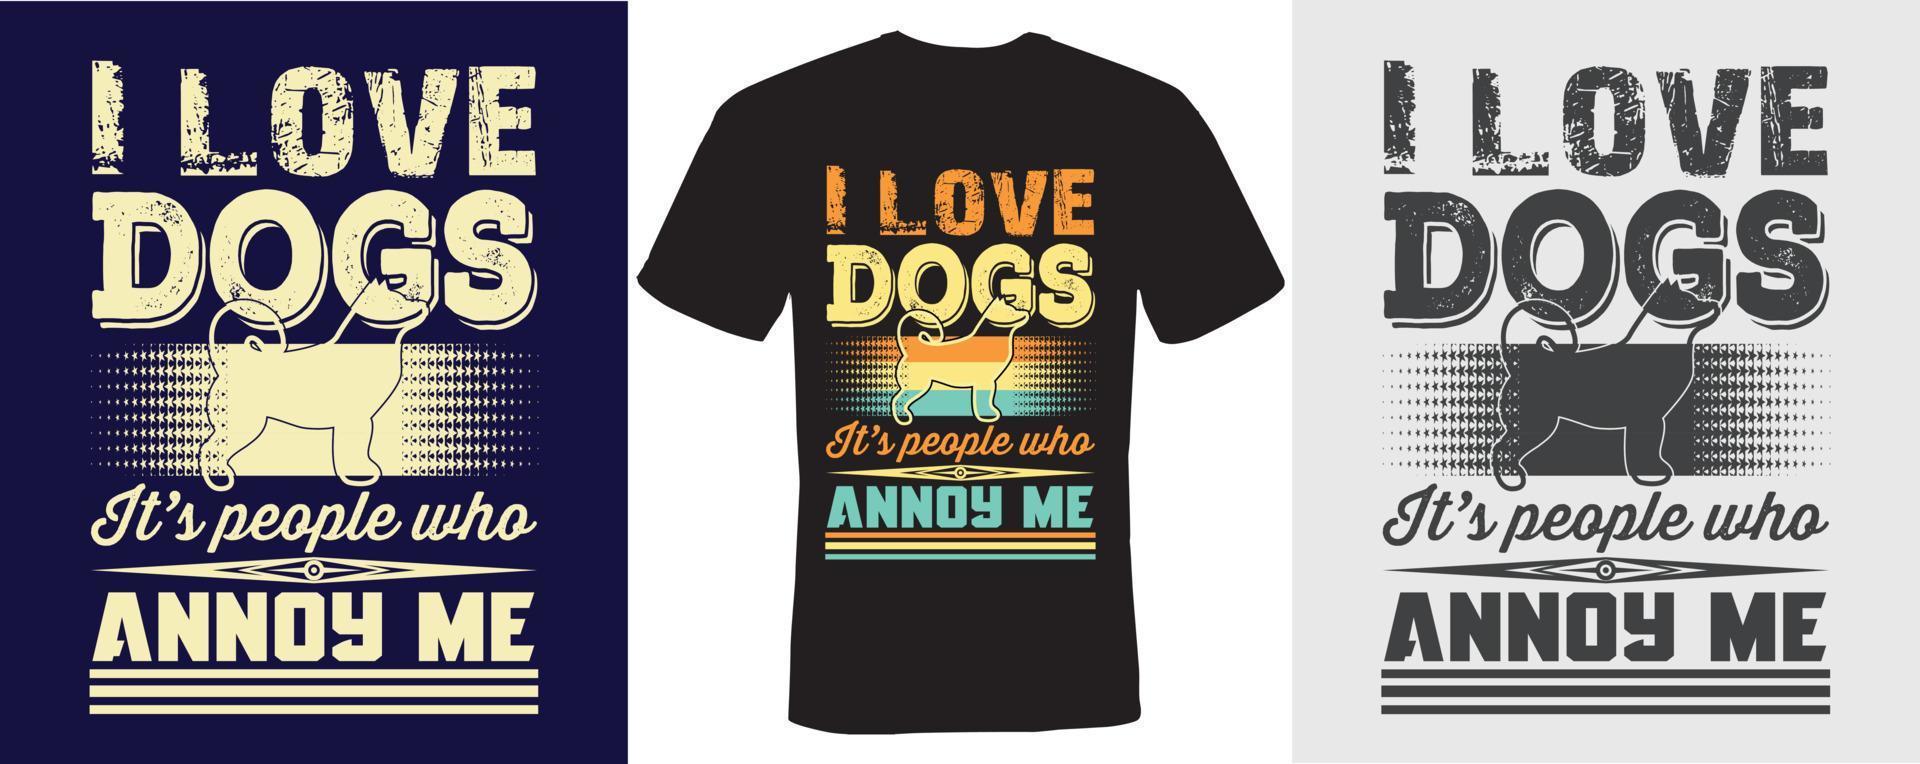 j'aime les chiens ce sont les gens qui m'ennuient conception de t-shirt pour les chiens vecteur